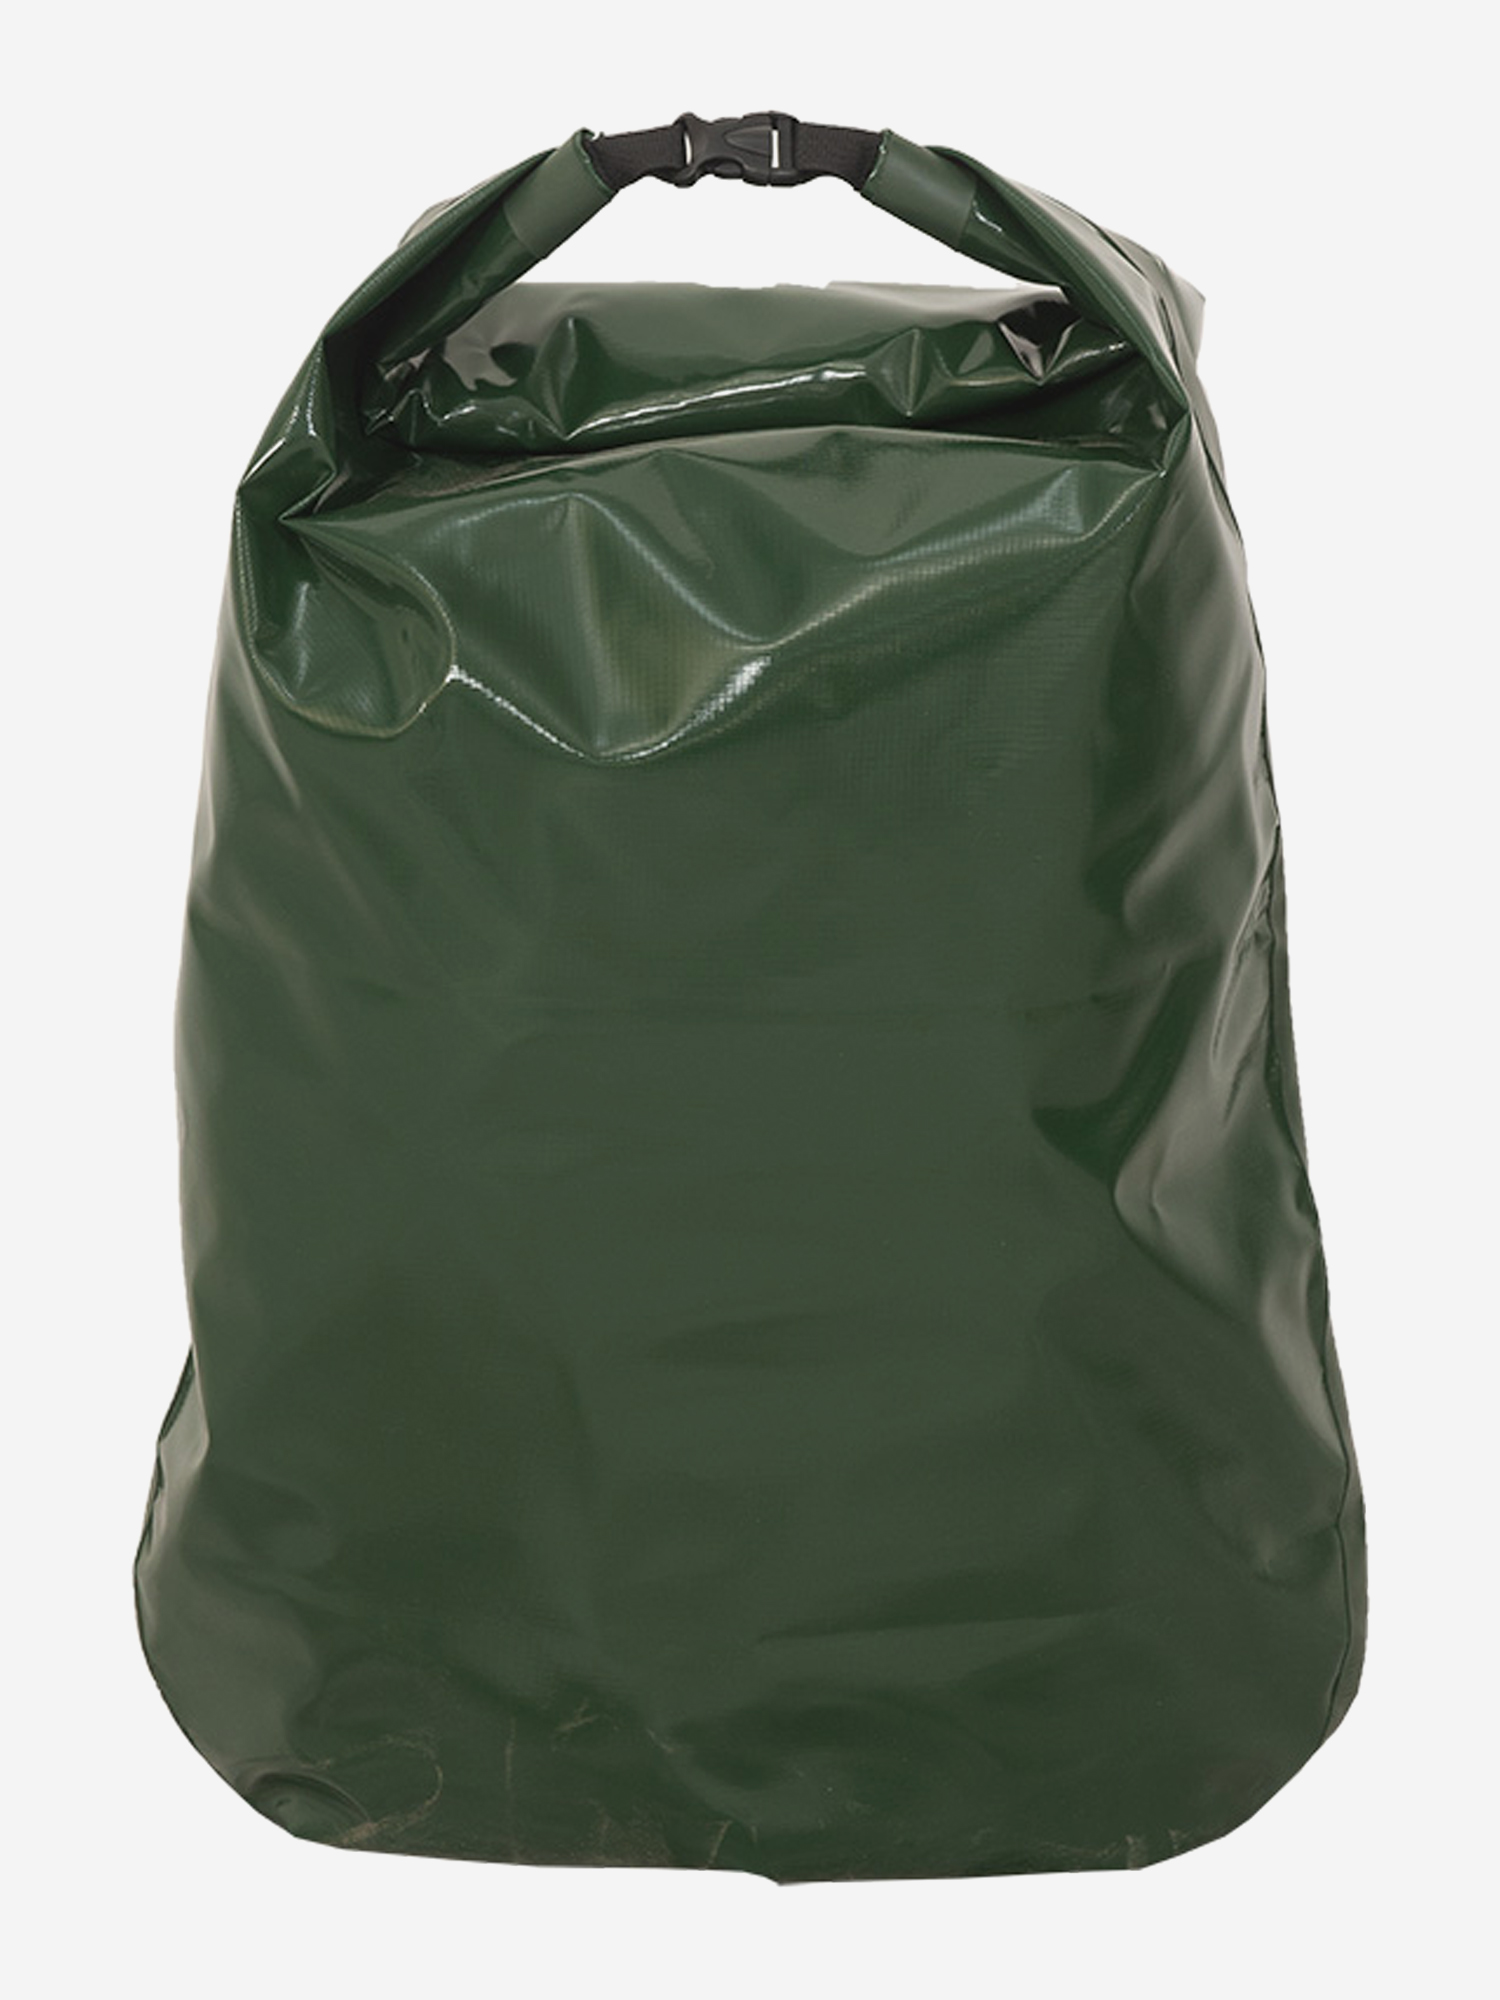 Гермомешок Ковчег 40, Зеленый сумка гермомешок greenhouse 5л зеленая зеленый